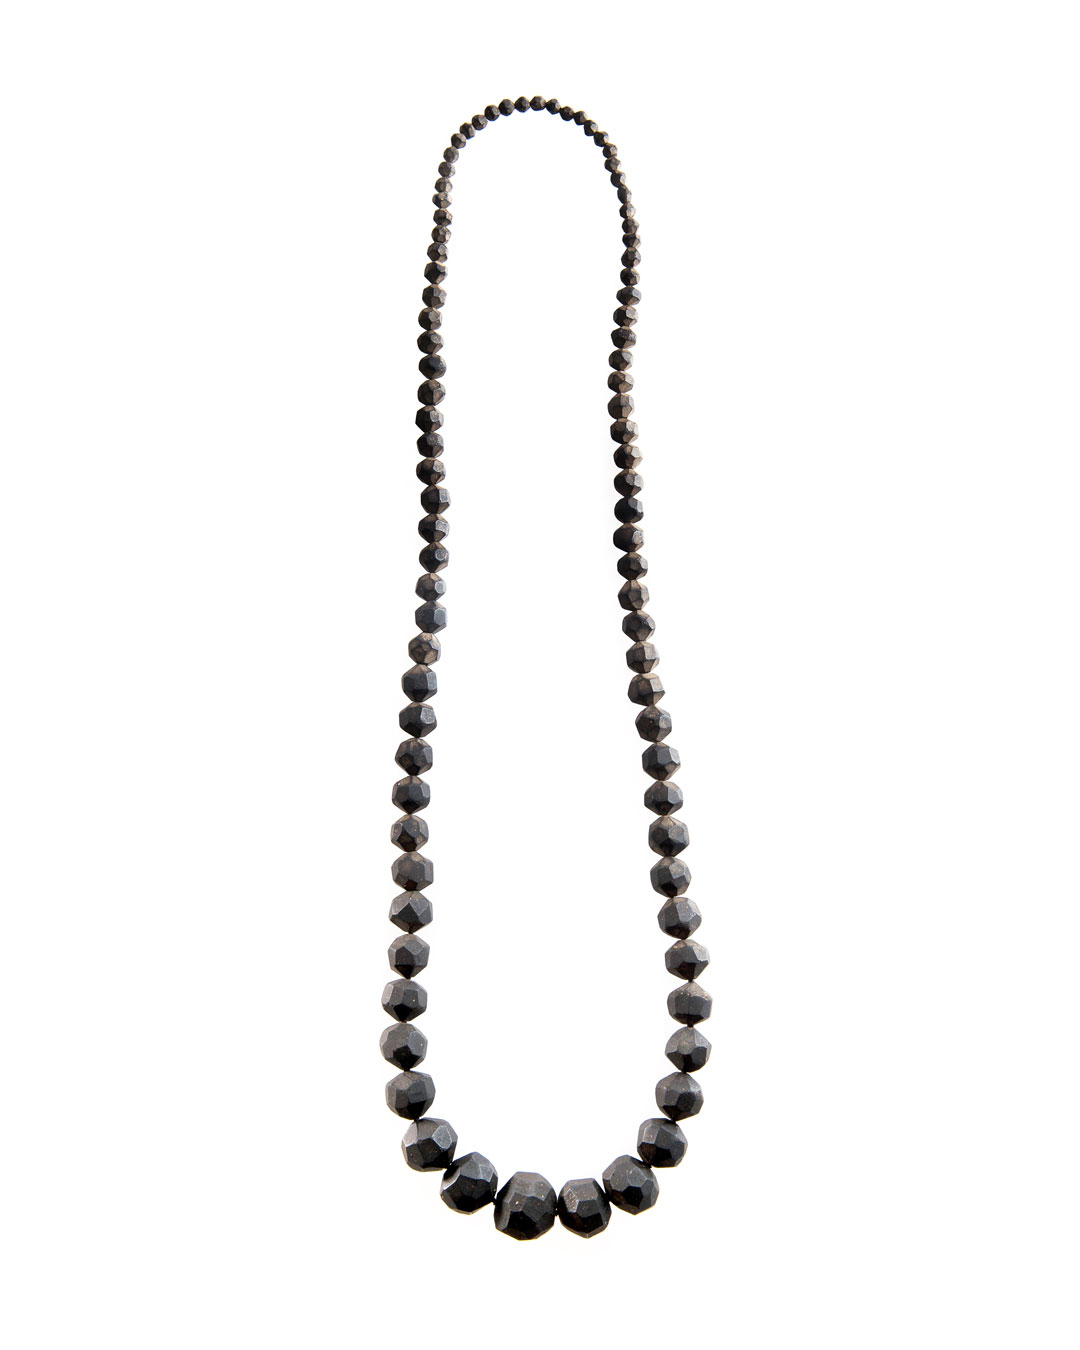 Carmen Hauser, Entelechie (Entelechy), 2016, necklace; soil, resin, yarn, 600 x 170 x 35 mm, €1210